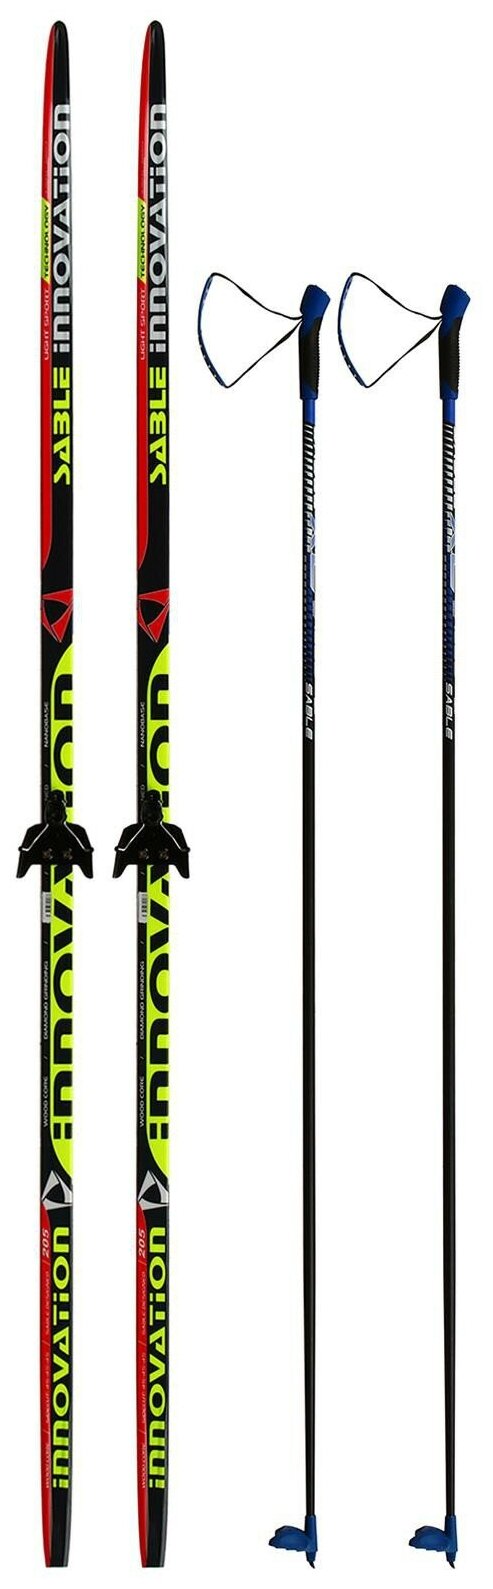 Комплект лыжный бренд ЦСТ "Step", длина лыж 205 см, длина палок 165, крепление NN75 мм, цвет микс